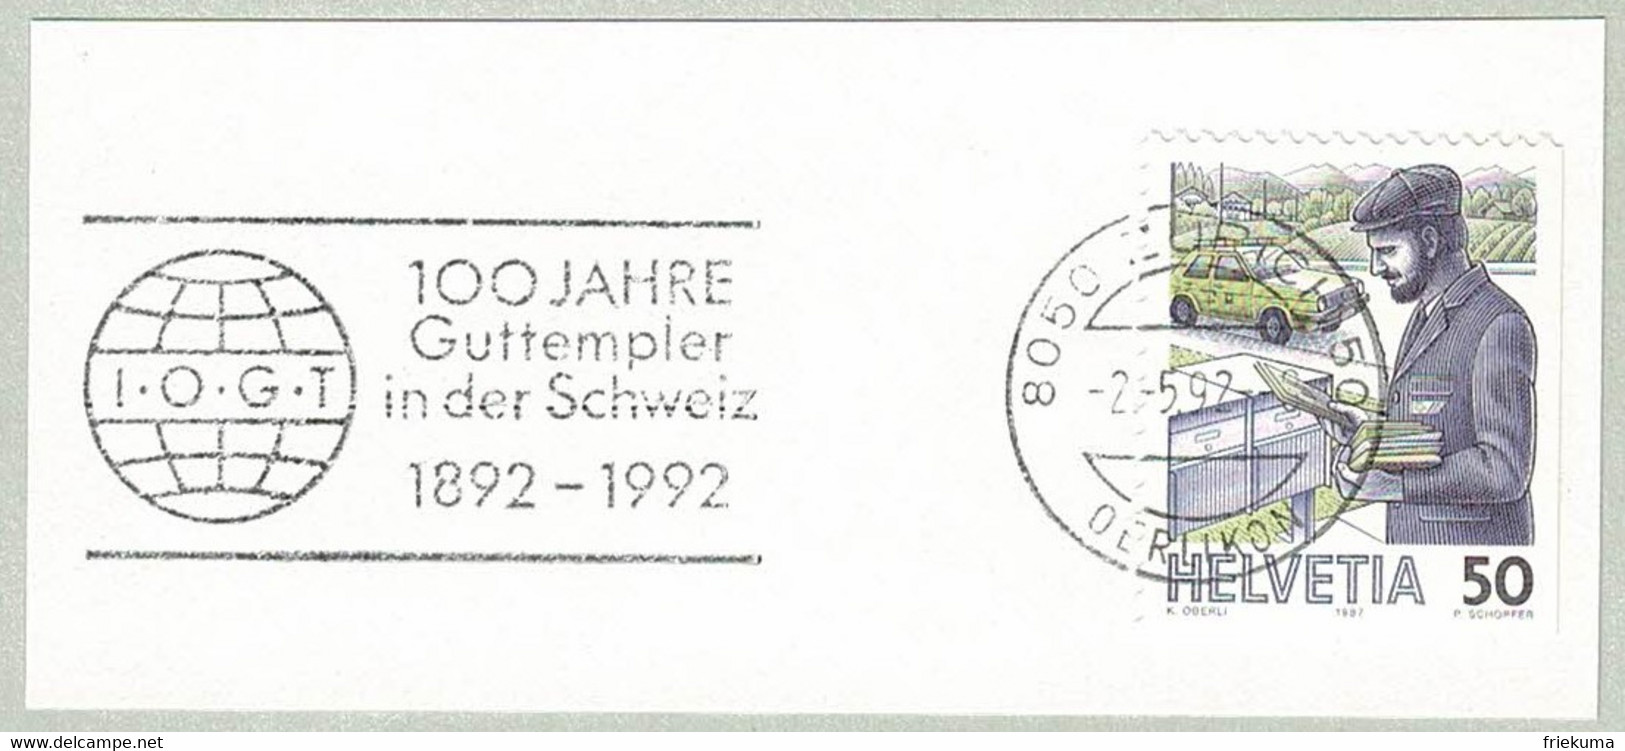 Schweiz / Helvetia 1992, Flaggenstempel Guttempler Zürich, Abstinenz, Alkohol, Drogen, Good Templars - Drogen